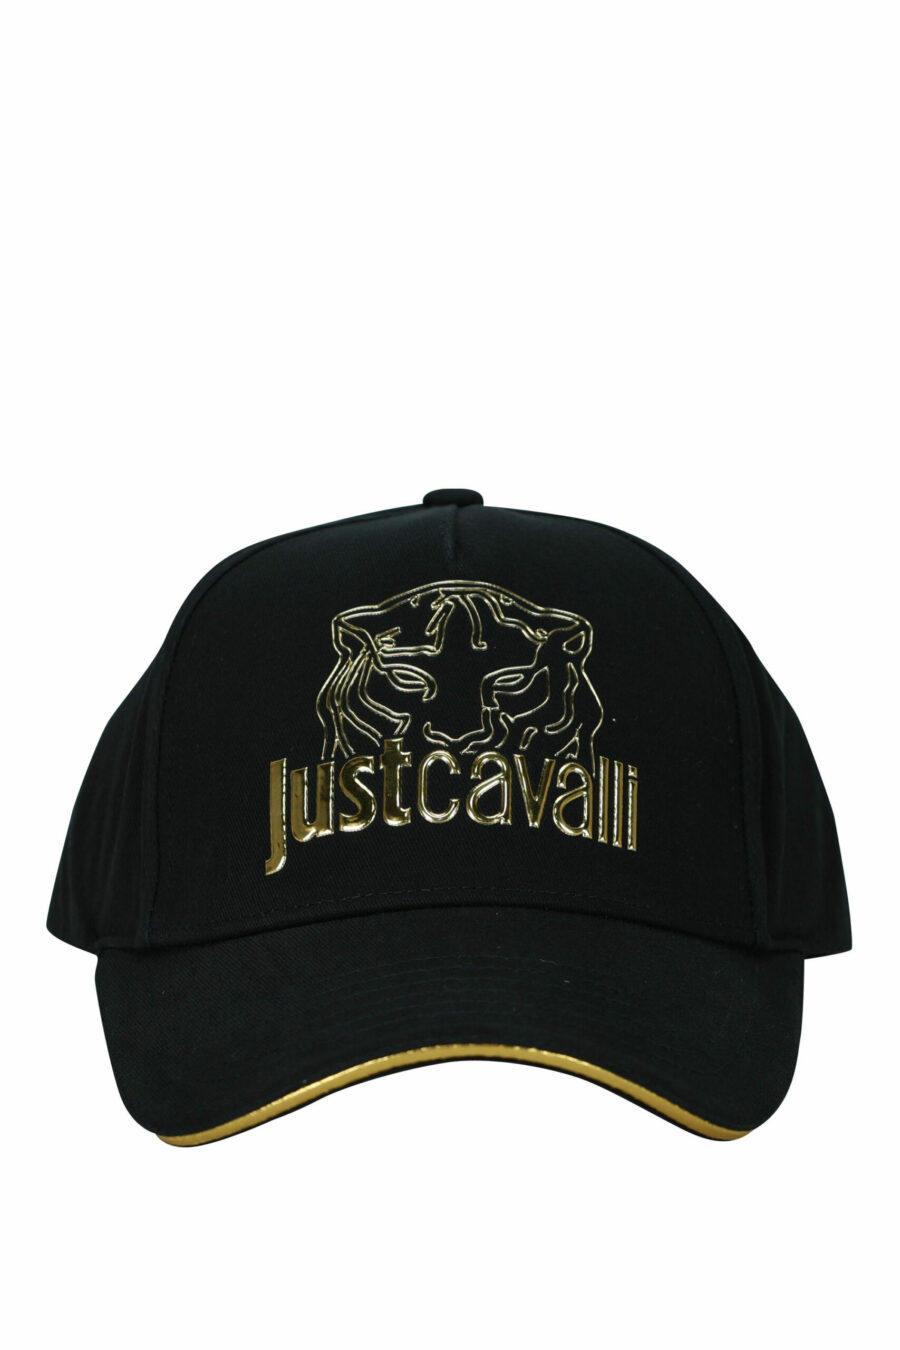 Gorra negra con logo tigre dorado - 8052672742292 scaled